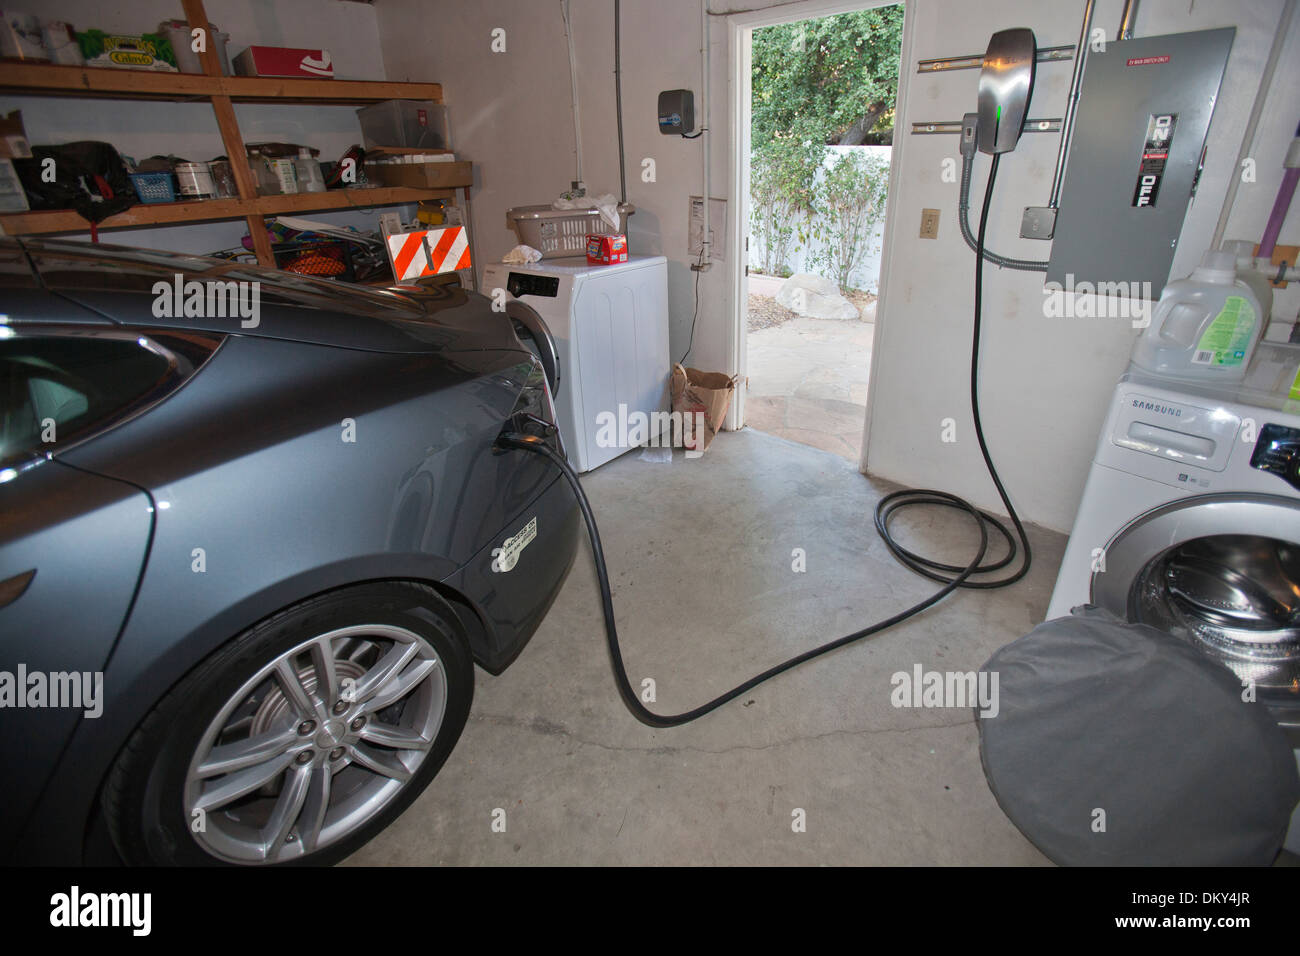 Tesla Elektroauto aufladen in Garage im grünen Haus, das aus dem Netz ist.  Los Angeles, Kalifornien, USA Stockfotografie - Alamy